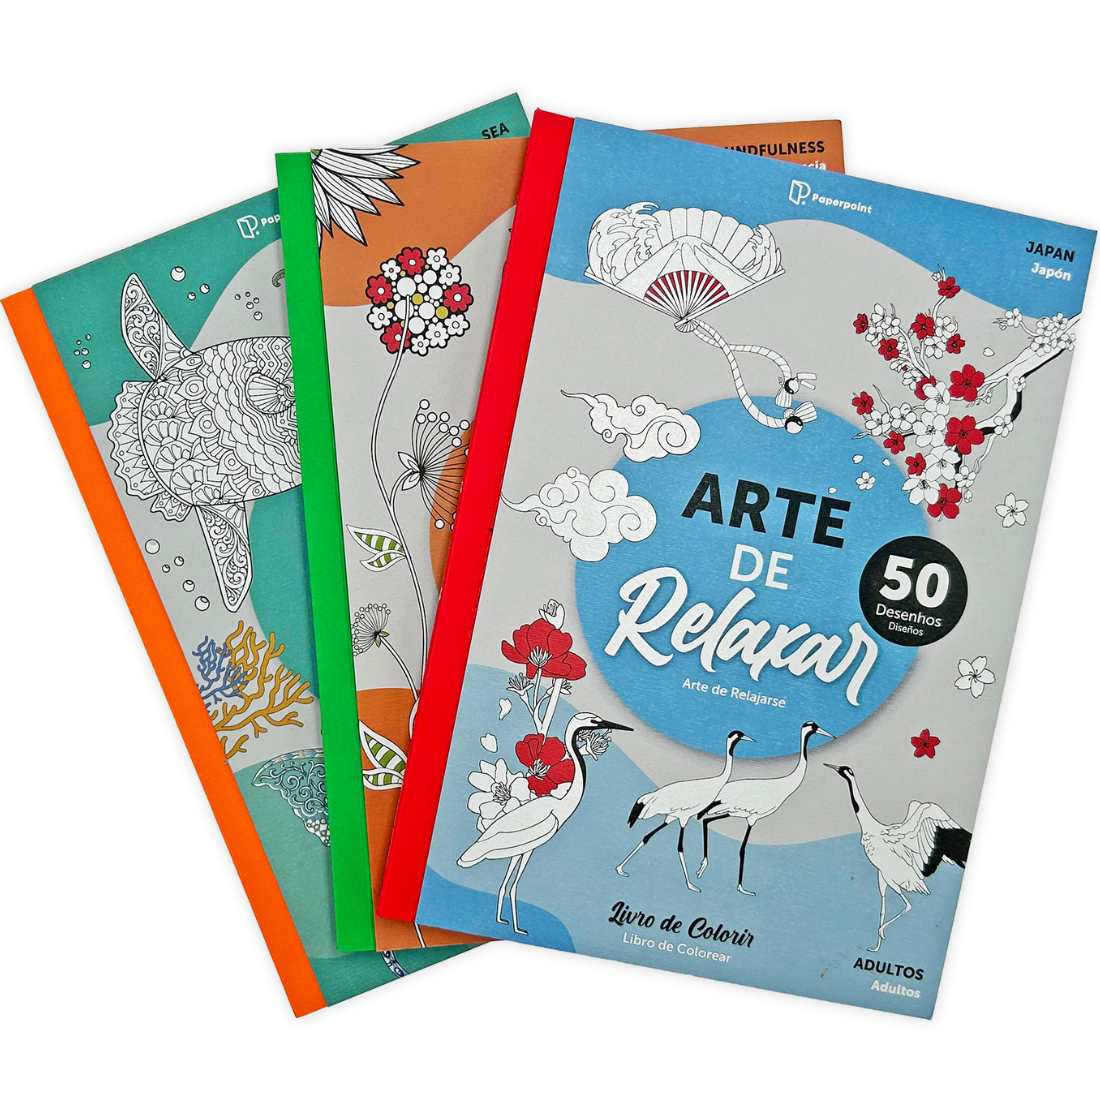 Livro Colorir Arte Relaxar Mindfulness 50 Desenhos